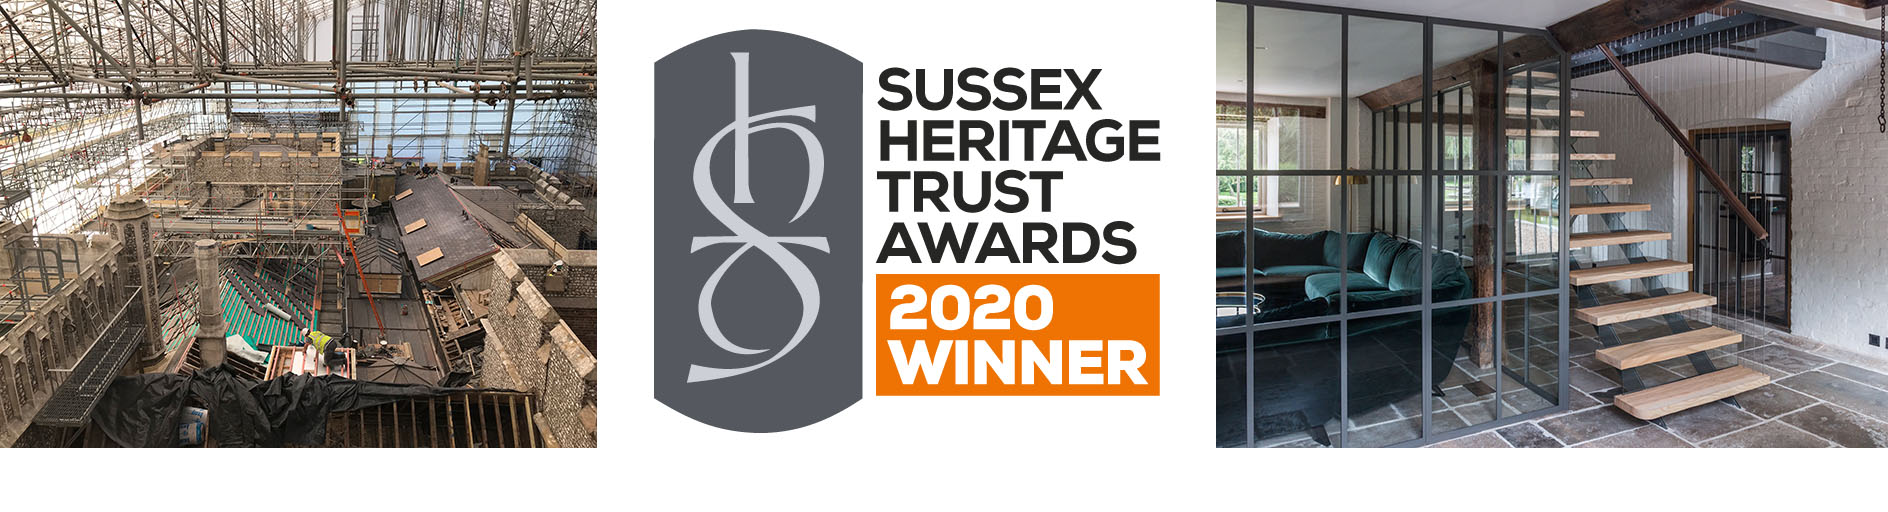 Sussex Heritage Trust Awards 2020